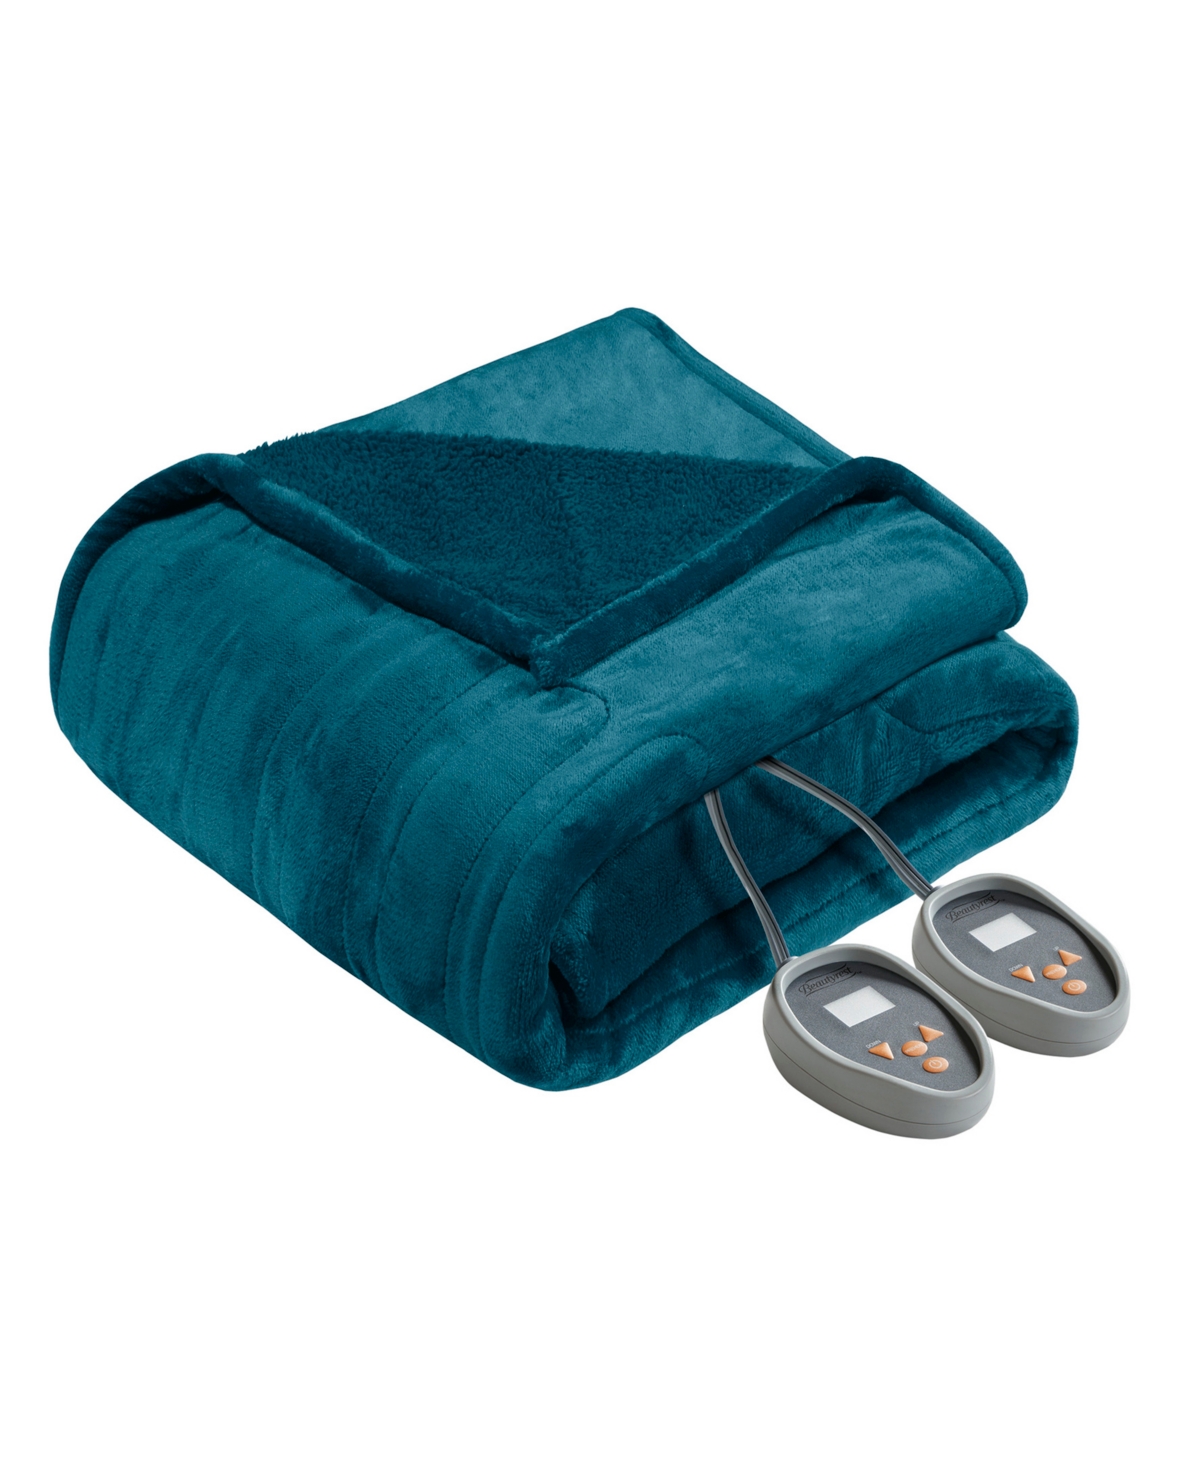 Beautyrest Microlight Berber Queen Electric Blanket Bedding